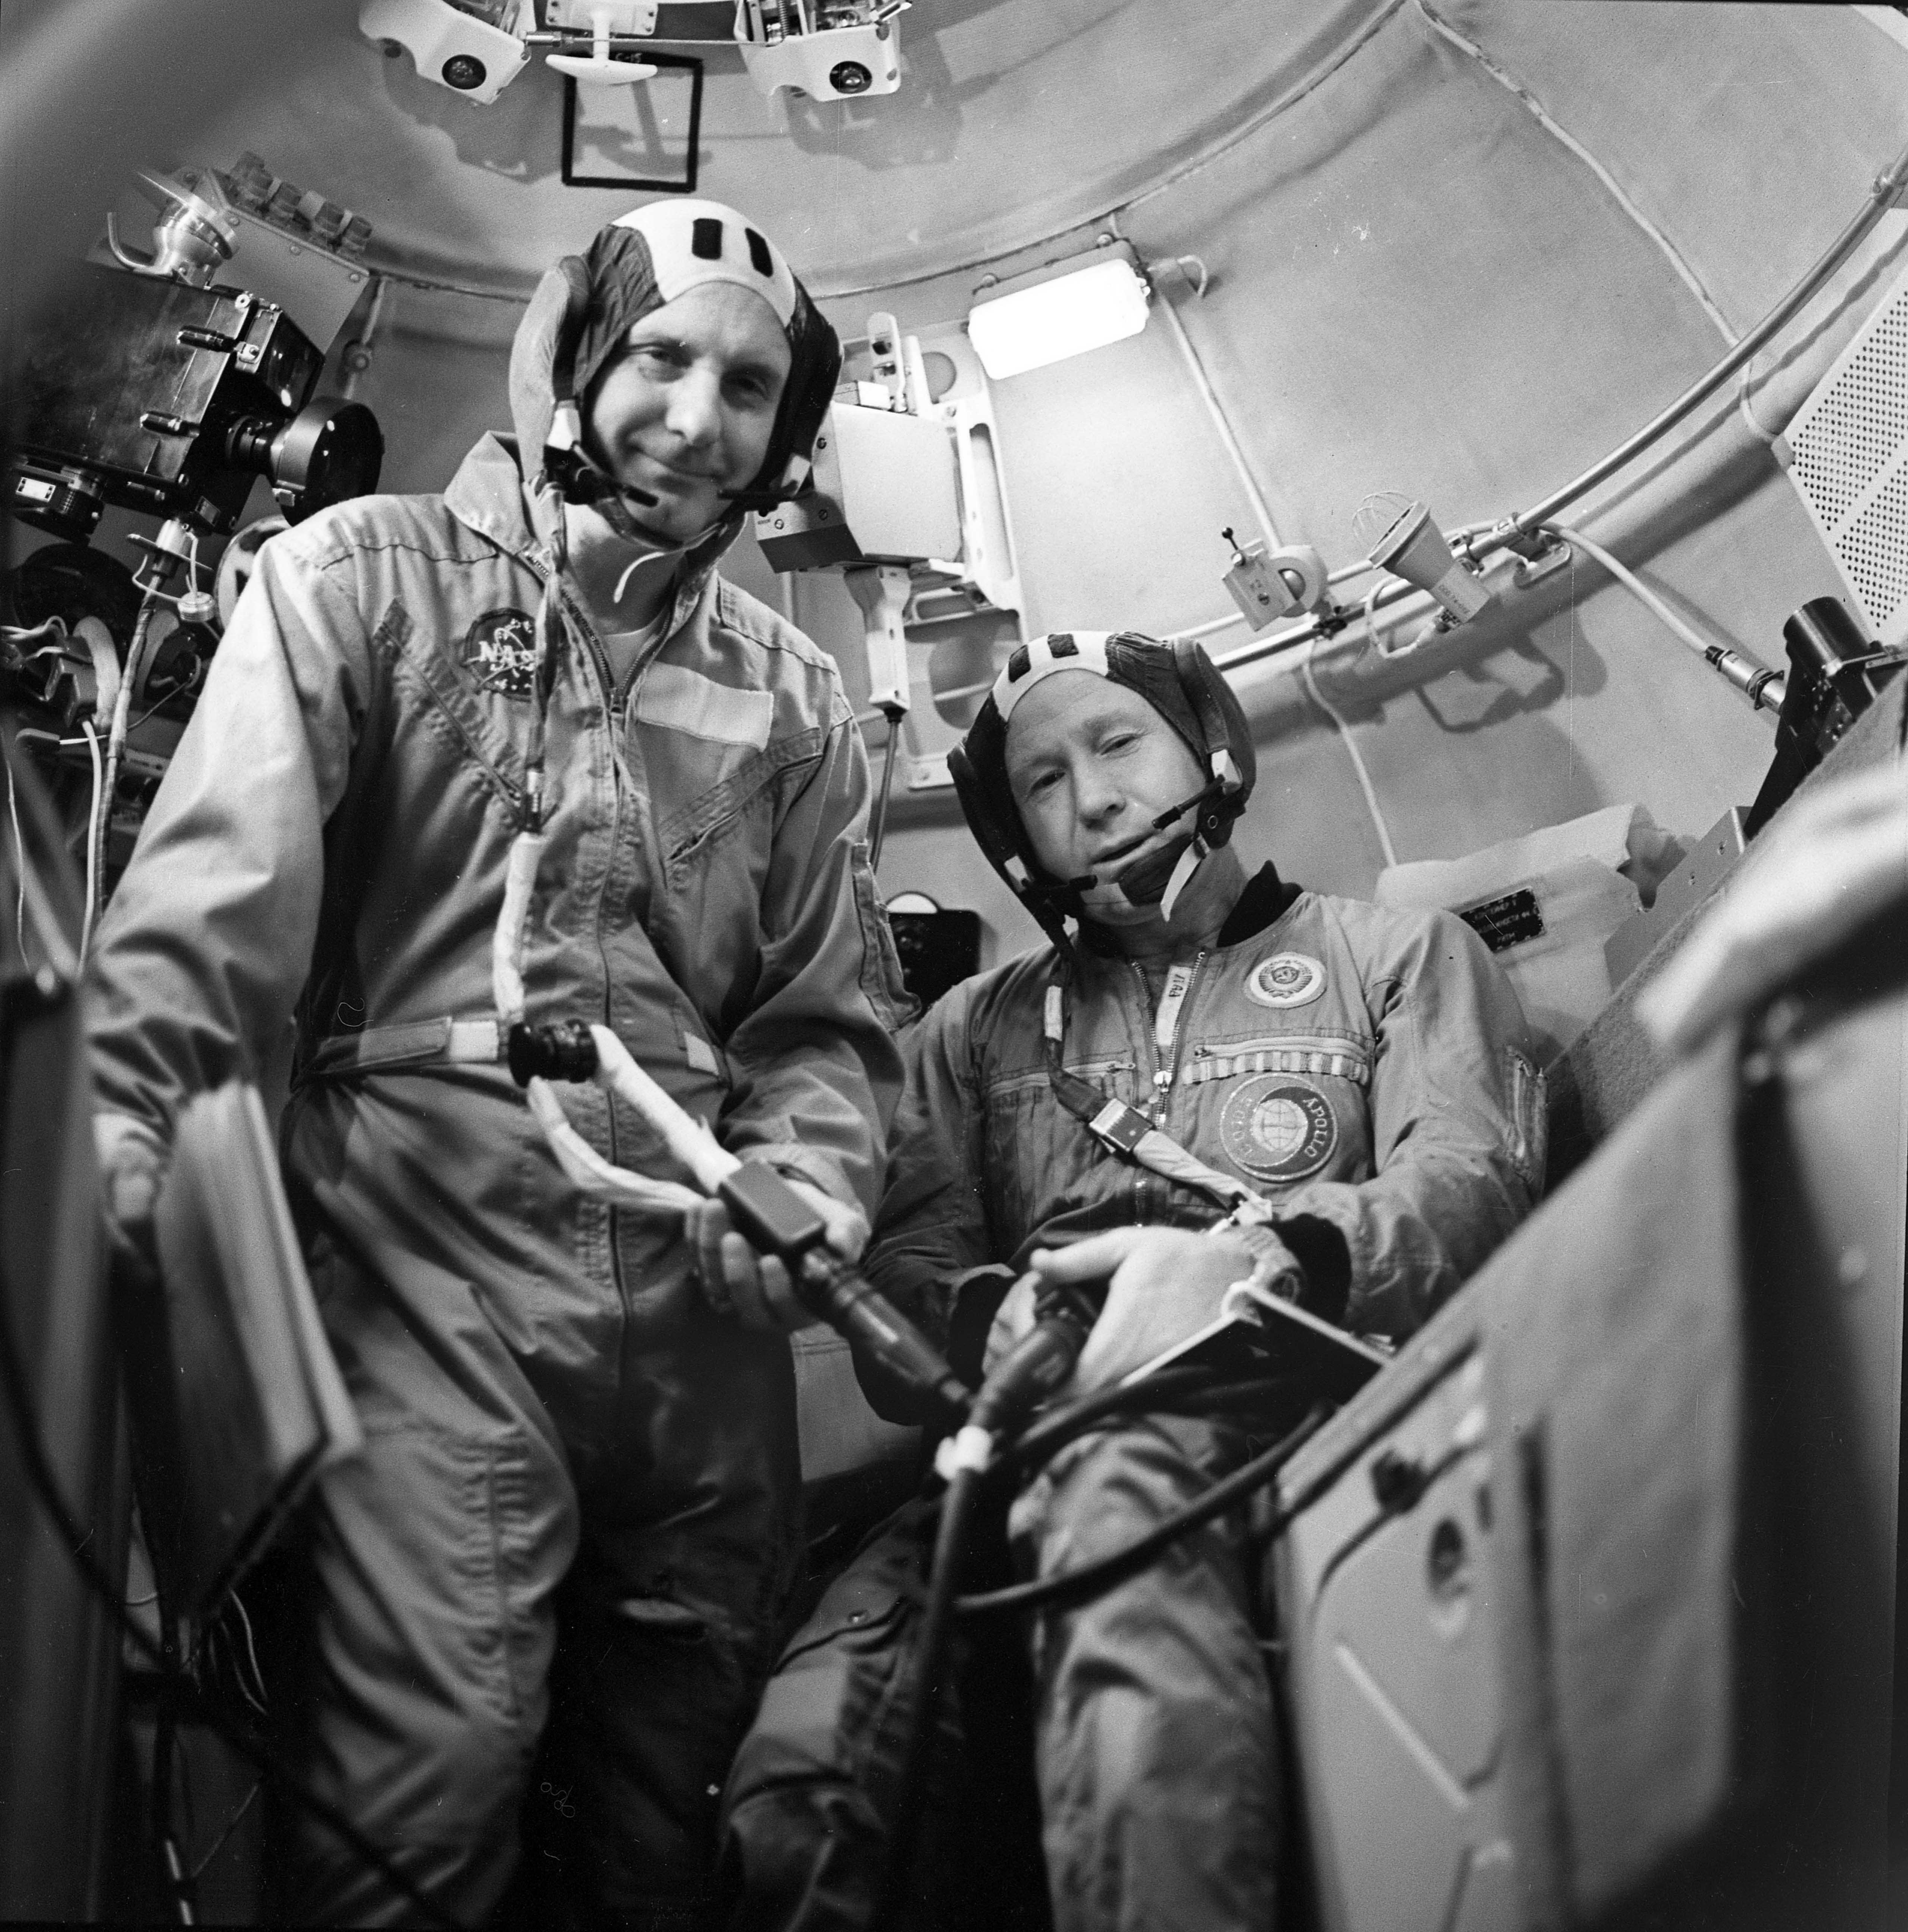 2 минуты в космосе. Леонов и Беляев космонавты. 1965 Полет Леонова и Беляева.